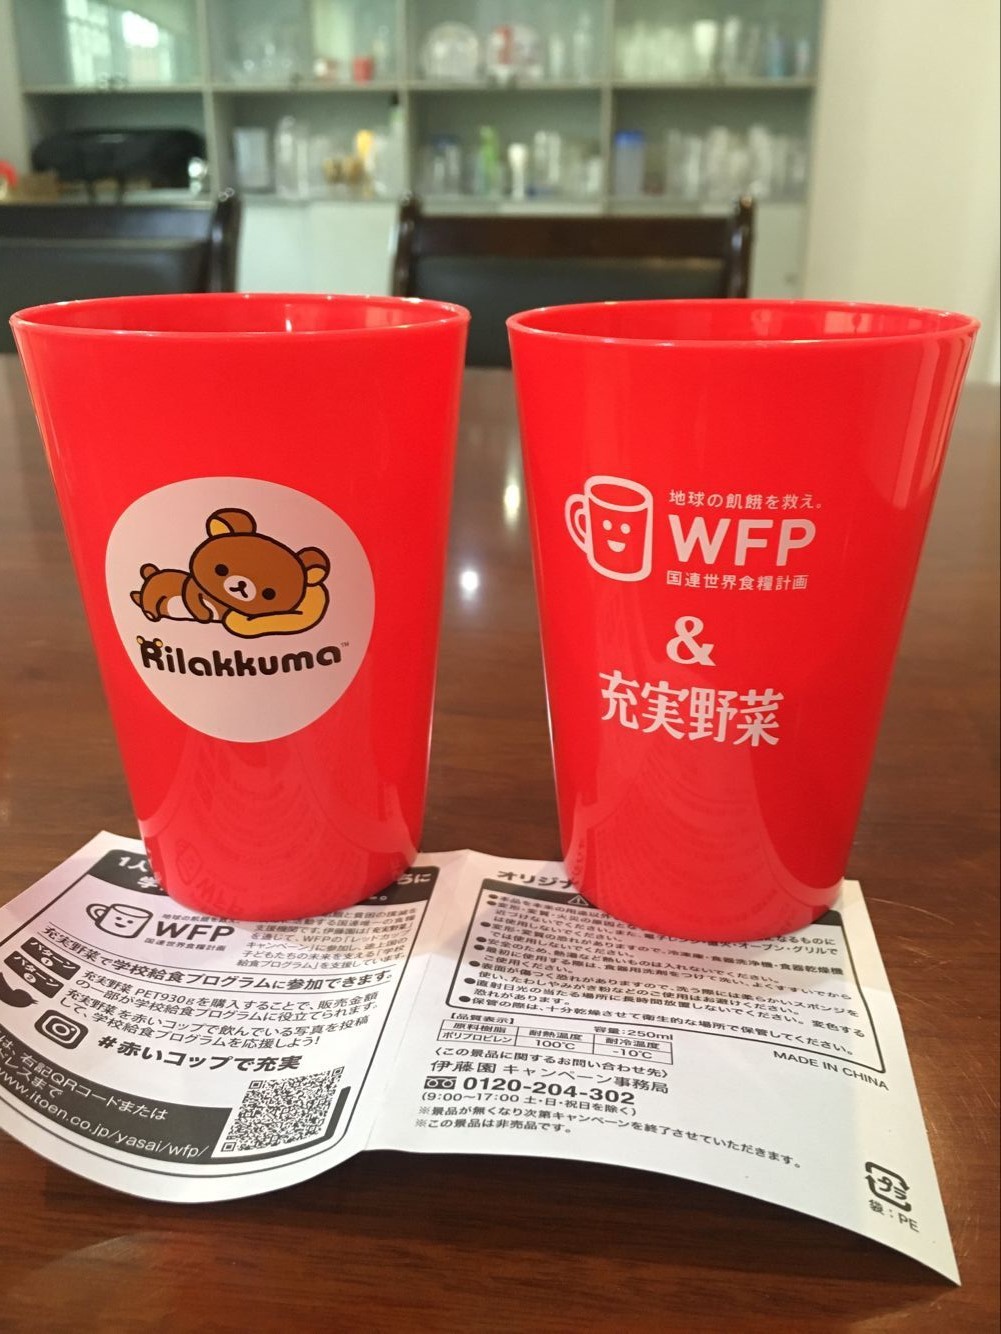 出口日本食品级彩色PP塑料杯红色塑料饮料杯厂家直销广告杯礼品杯示例图9